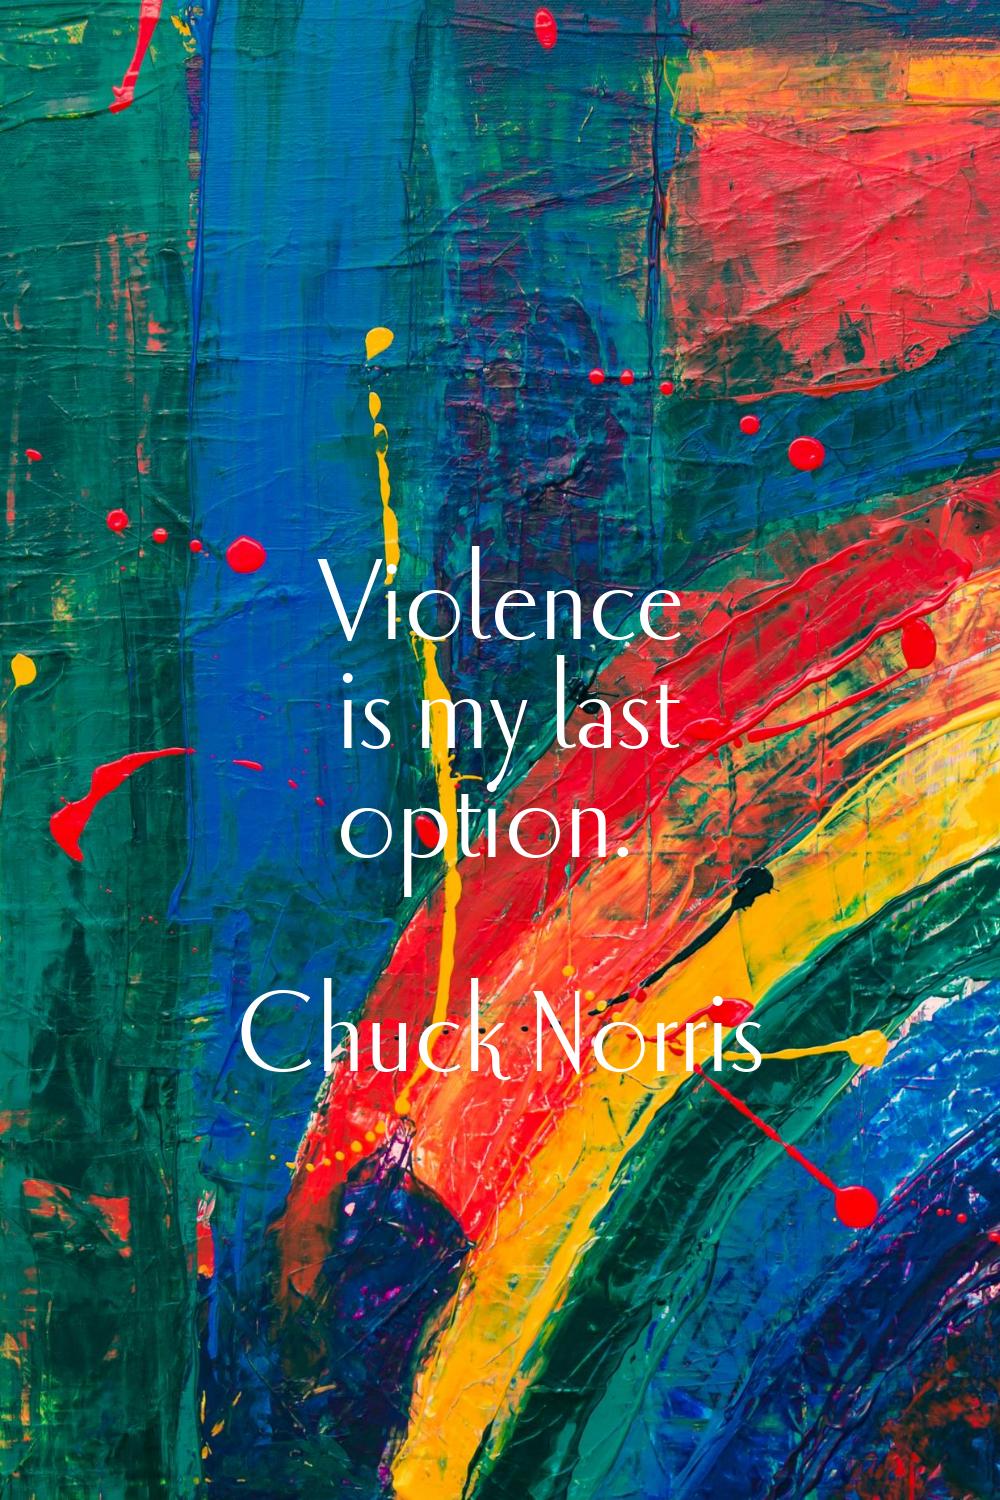 Violence is my last option.